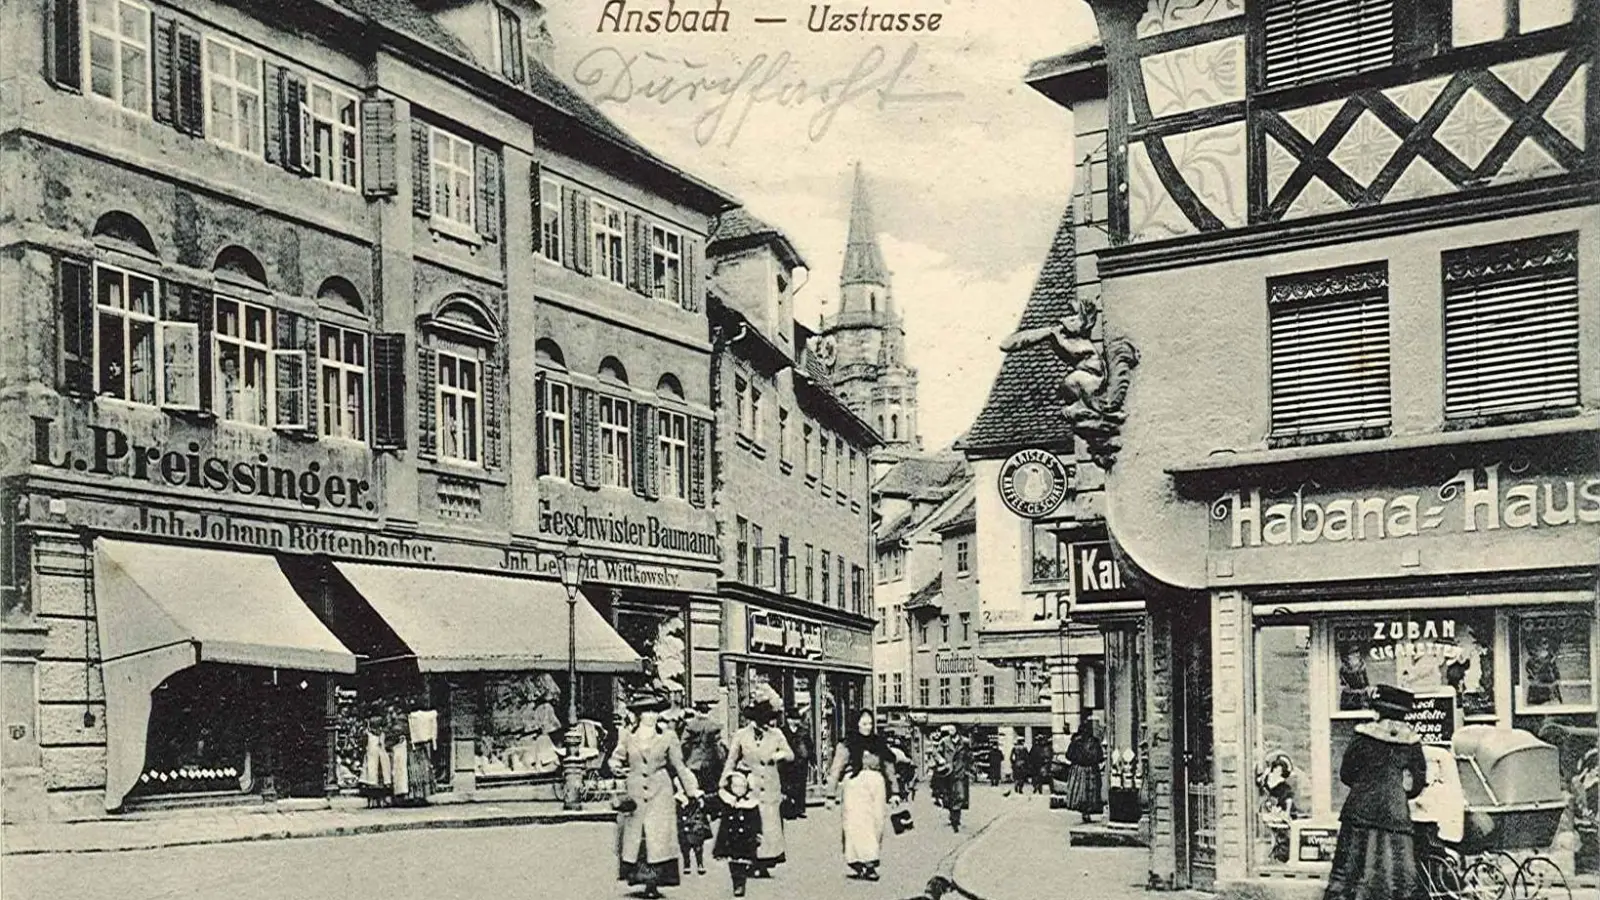 Die Ansbacher Innenstadt, wie sie einst ausgesehen hat: Im Juni vor 100 Jahren gab es Beschwerden, weil „während des regsten Verkehrs die Abortgruben in der Uzstraße entleert wurden“. (Repro: Stadtarchiv Ansbach)